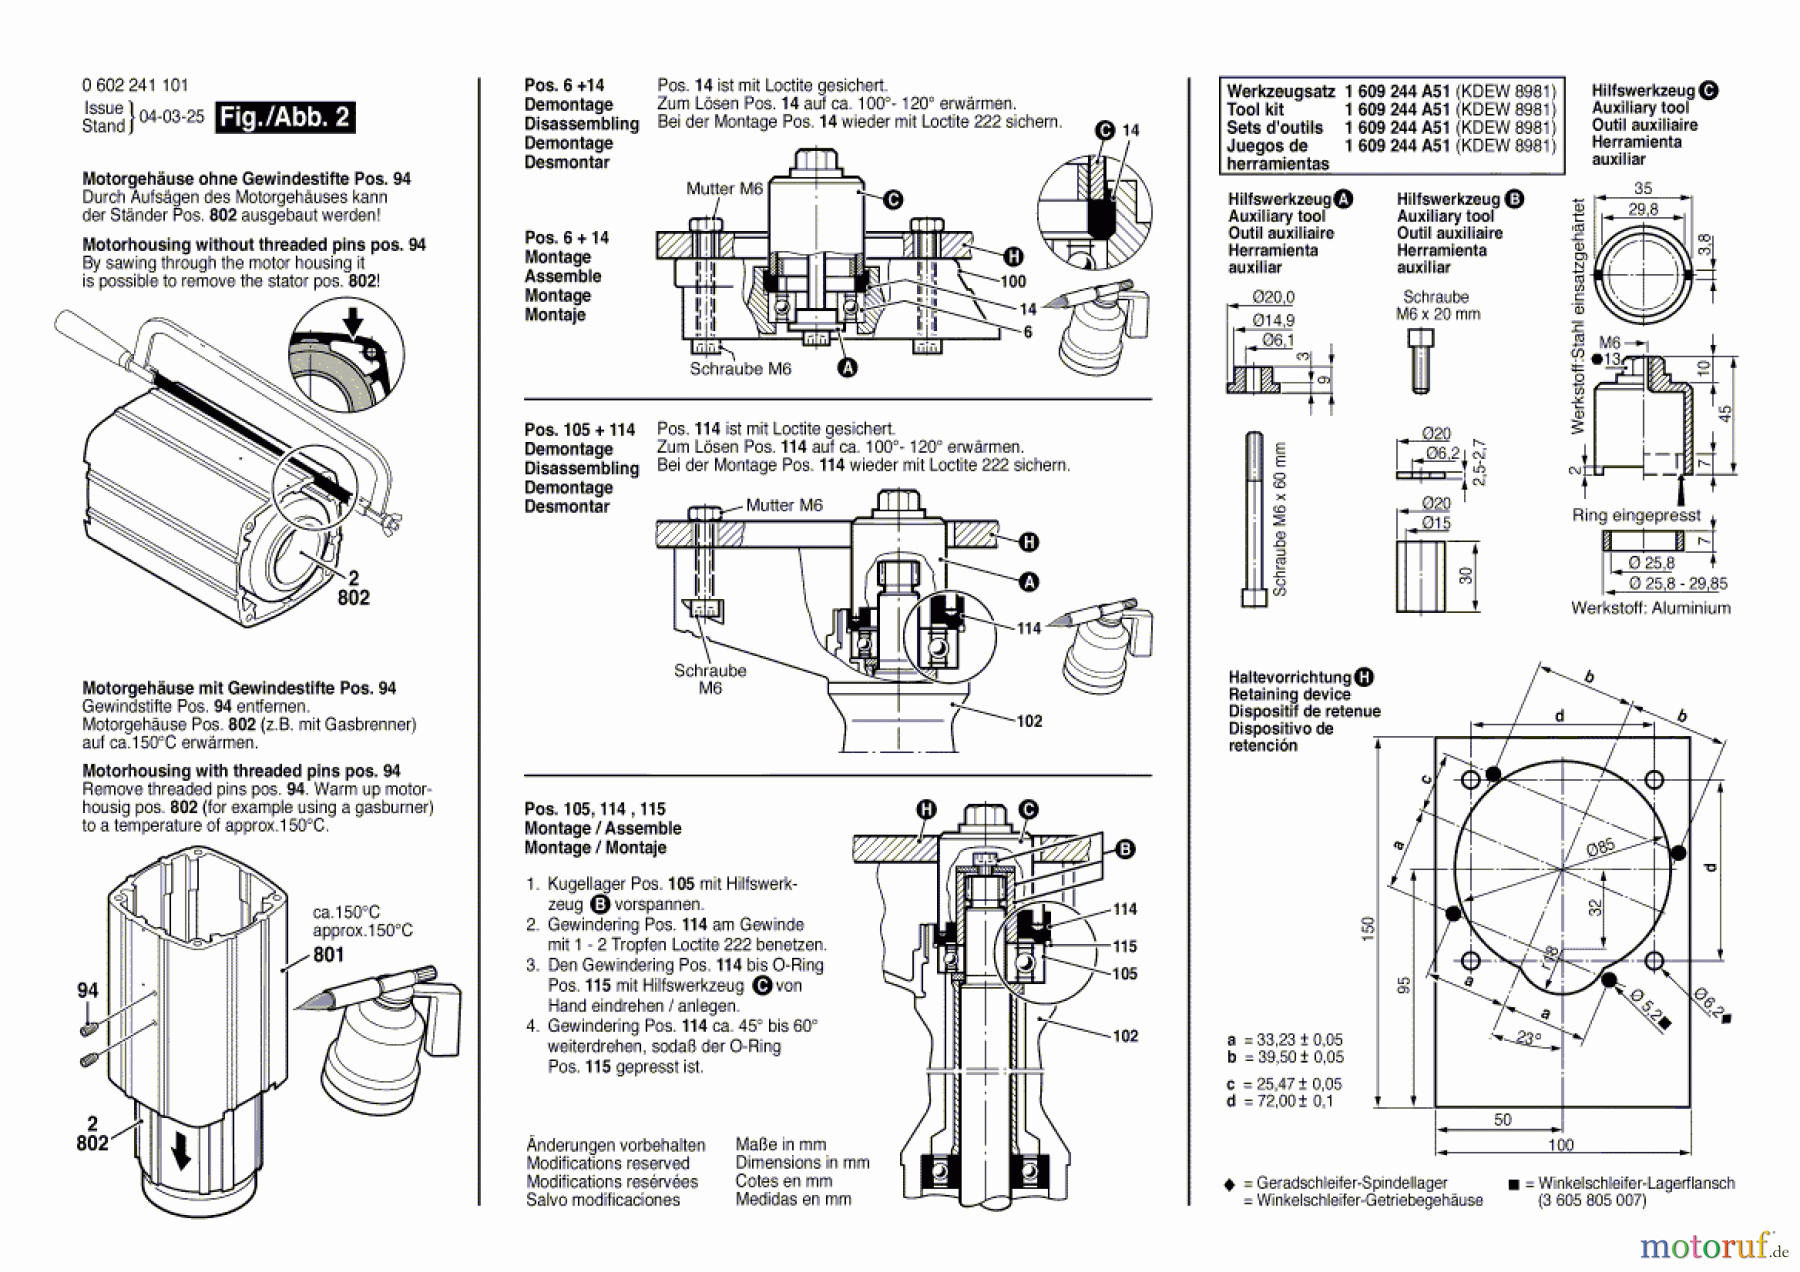  Bosch Werkzeug Hf-Geradschleifer 2 241 Seite 2